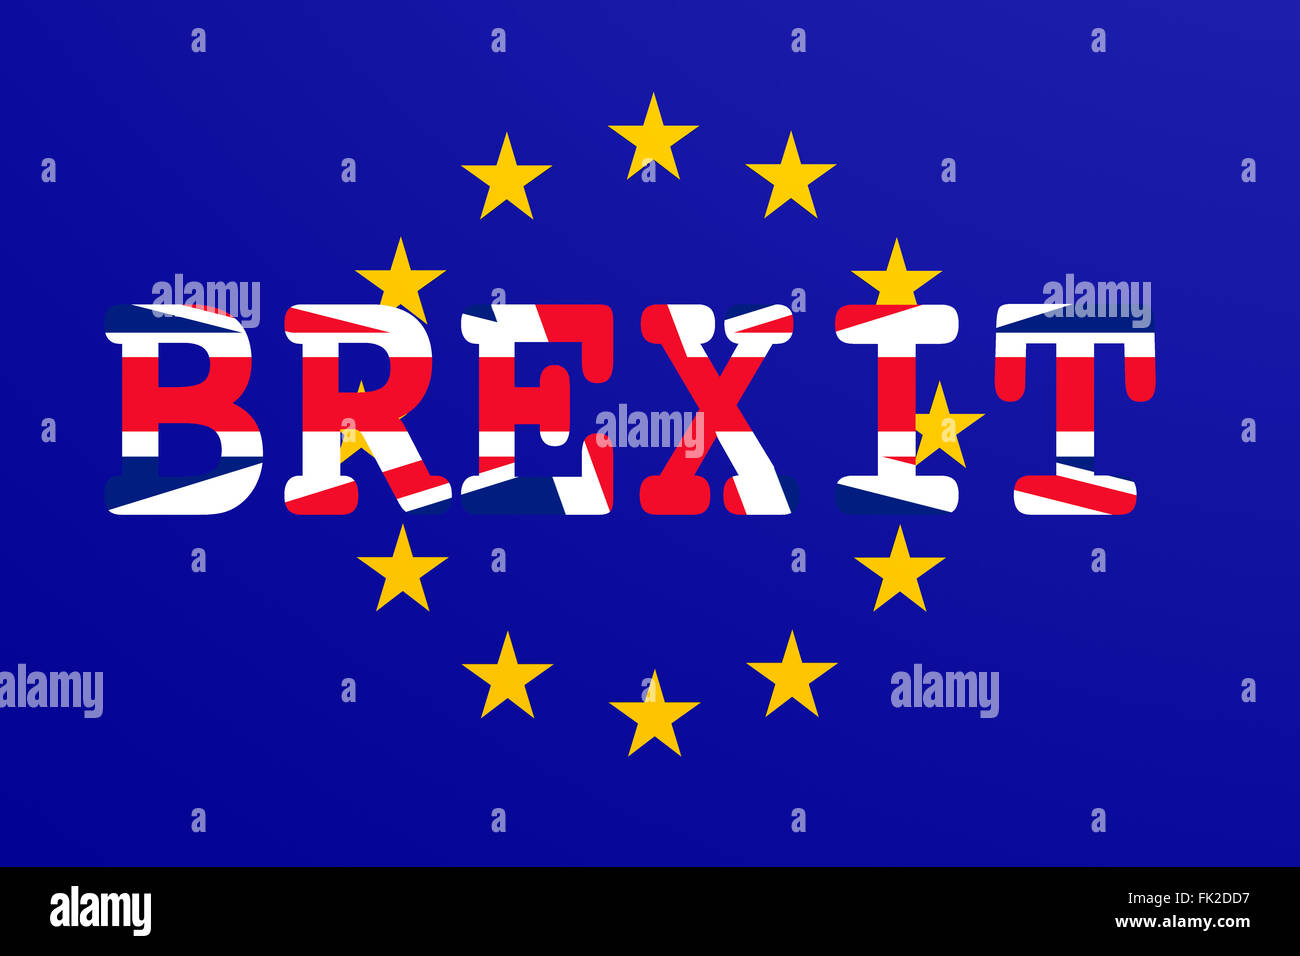 Brexit: banderas del Reino Unido y la Unión Europea para ilustrar la posible salida de Gran Bretaña de la UE Foto de stock